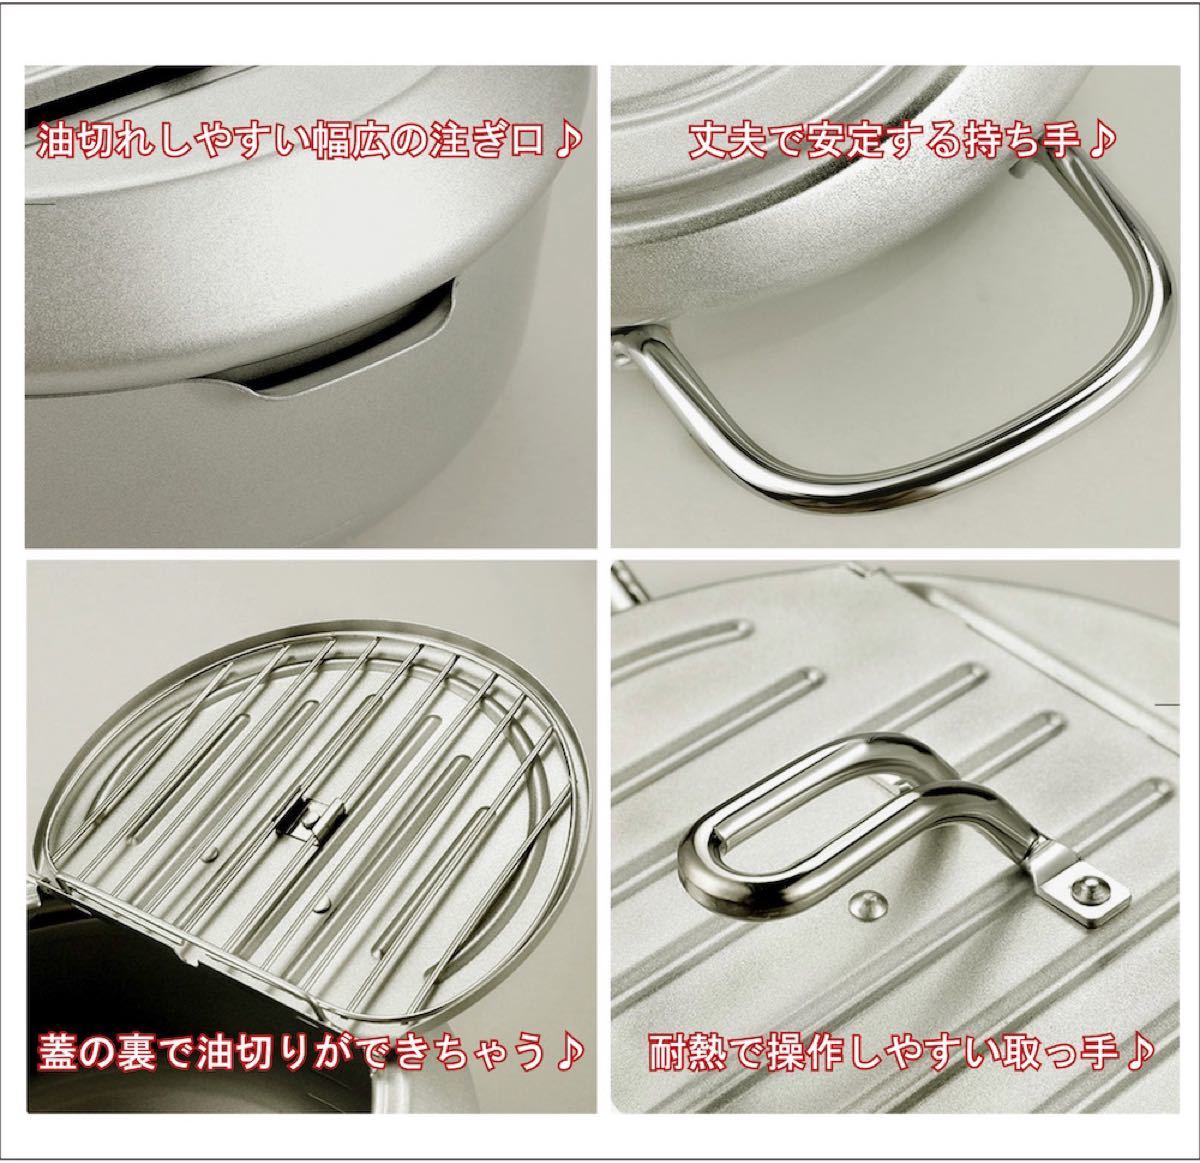 楽々天ぷら鍋 鉄製 温度計付 揚げ鍋20cm バット蓋付  シルバー